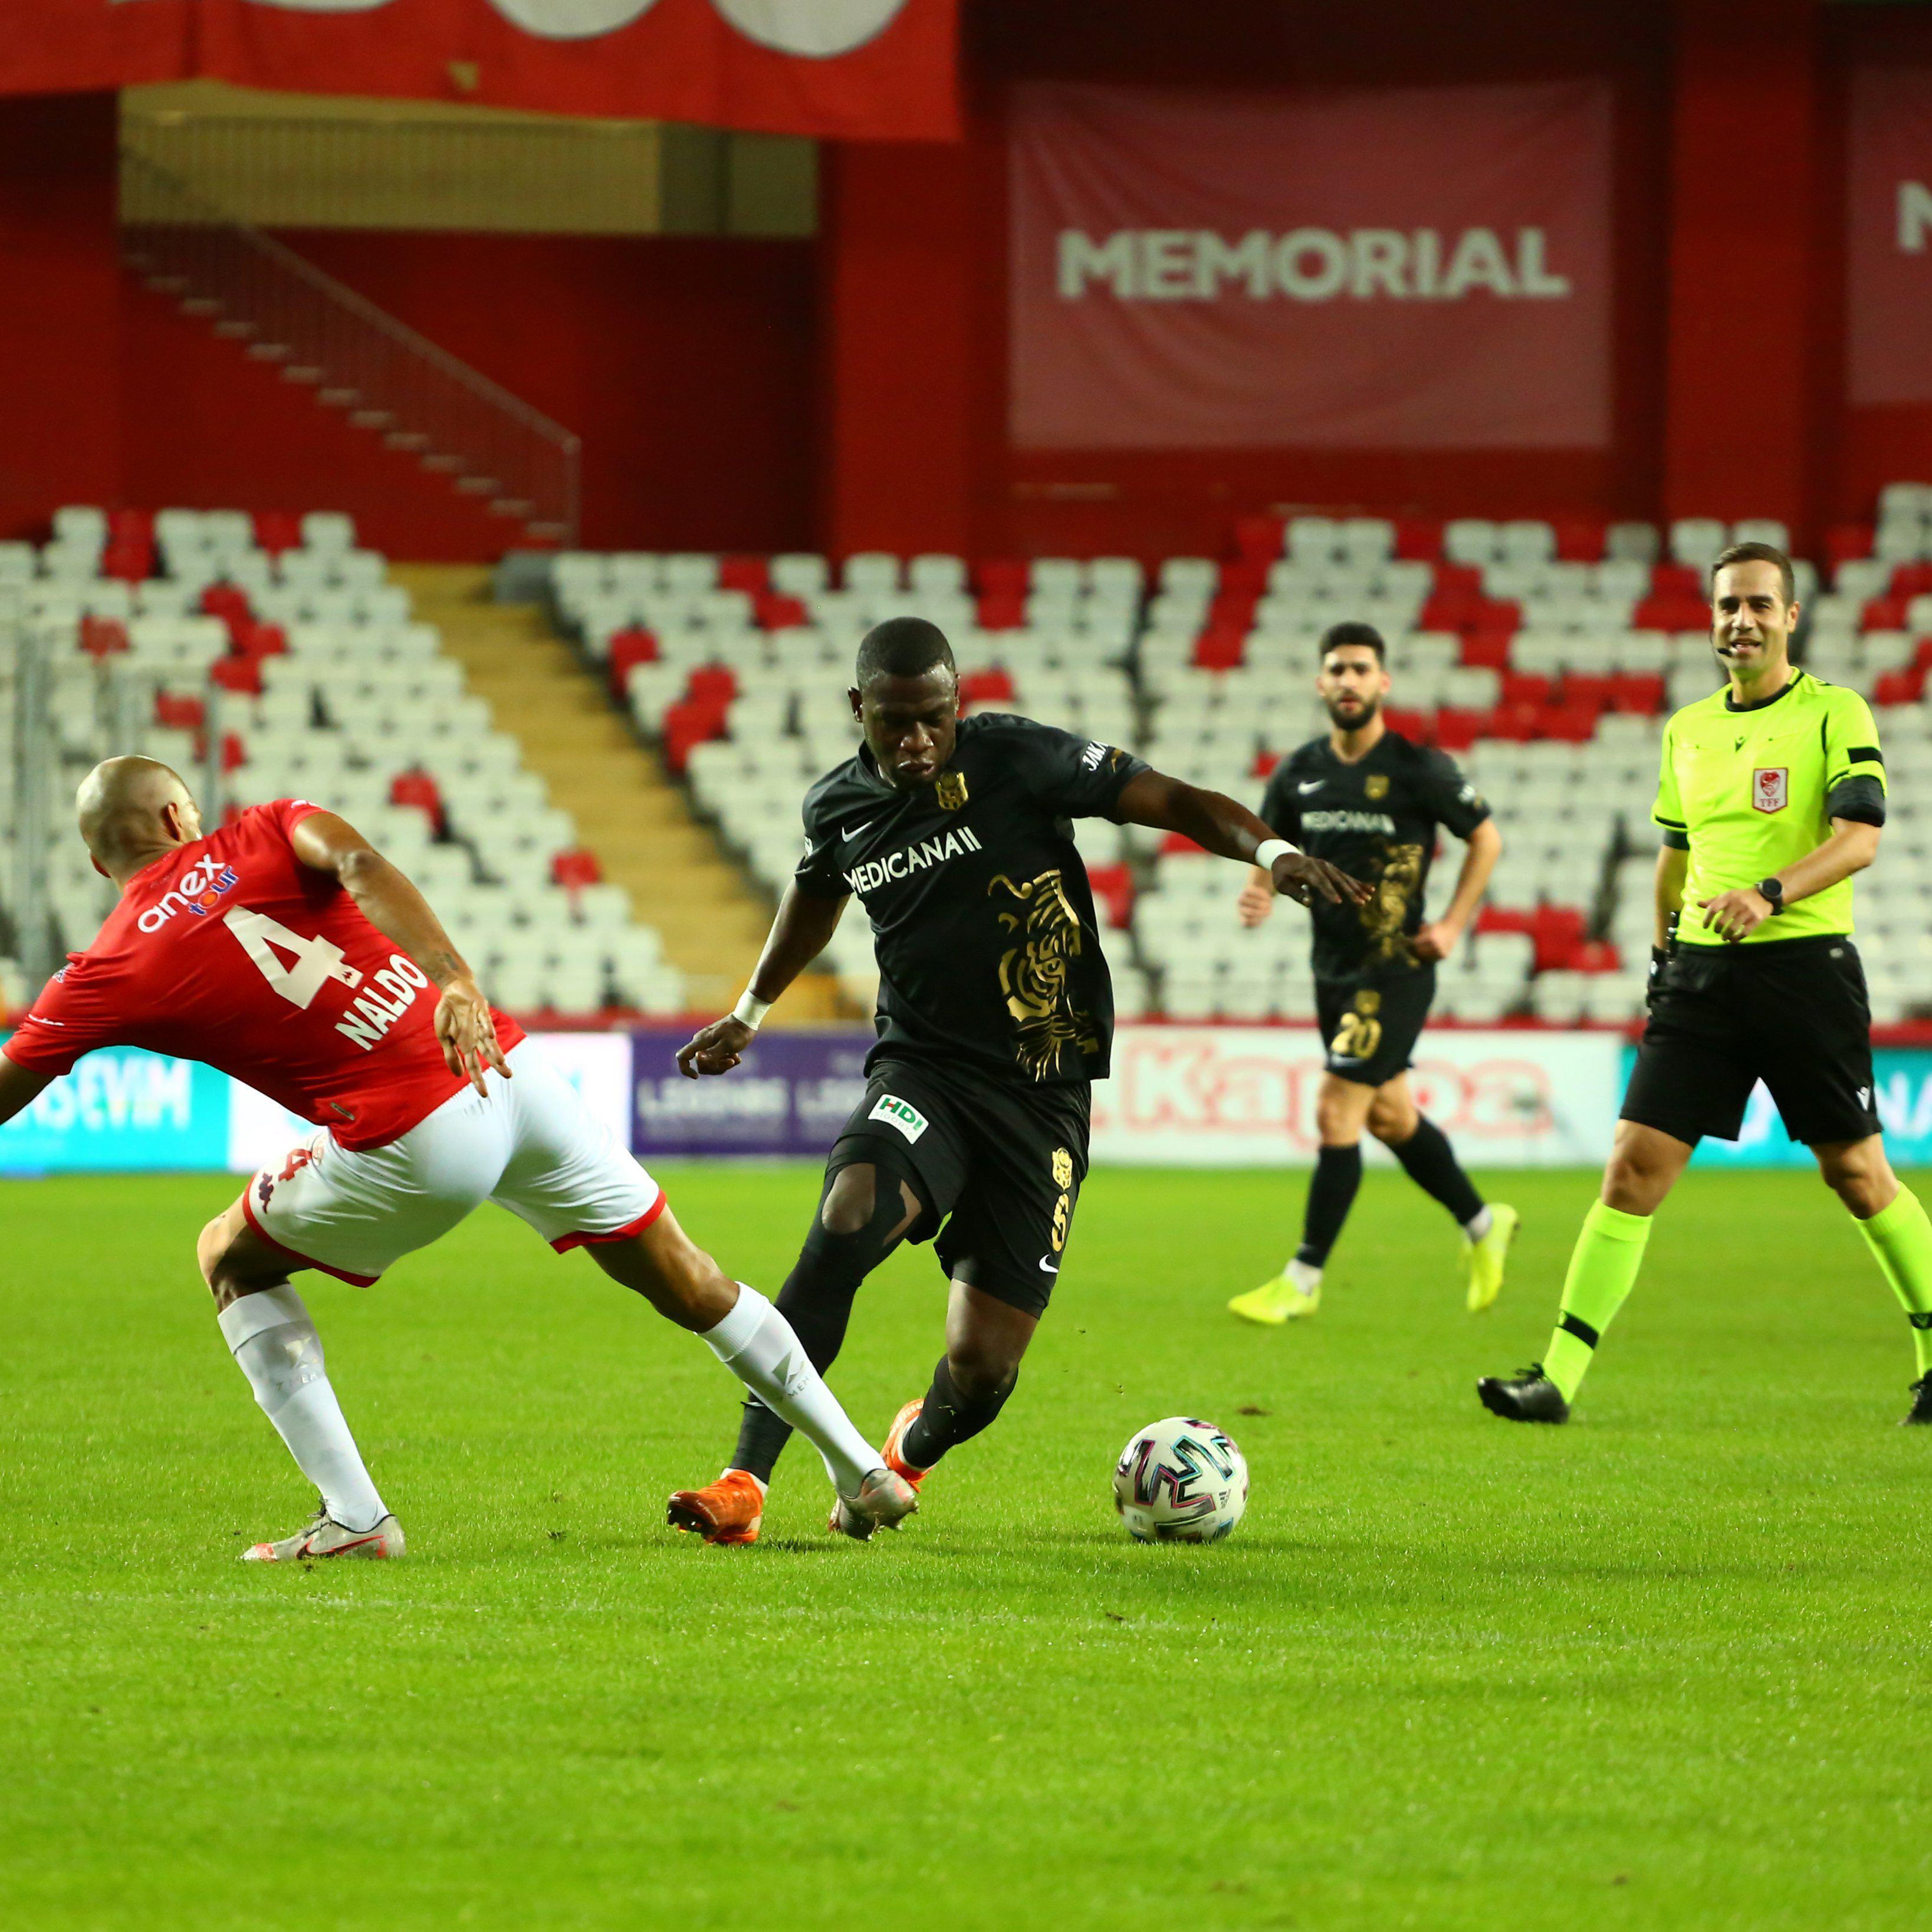 (ÖZET) Antalyaspor - Yeni Malatyaspor maç sonucu: 1-1